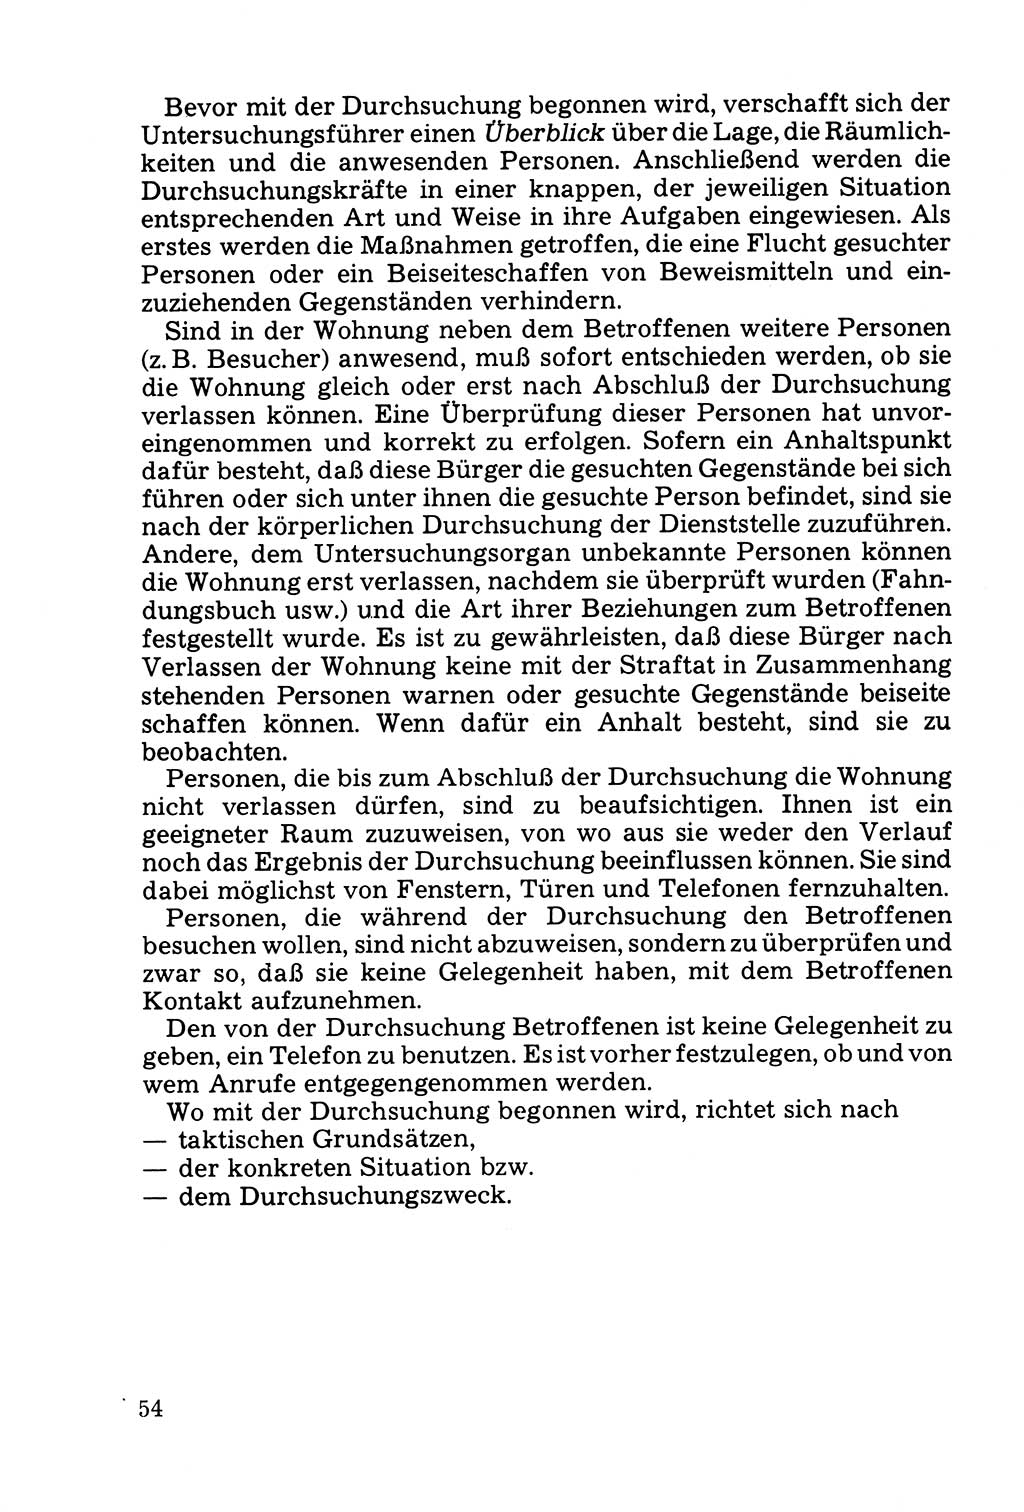 Die Durchsuchung und die Beschlagnahme [Deutsche Demokratische Republik (DDR)] 1979, Seite 54 (Durchs. Beschl. DDR 1979, S. 54)